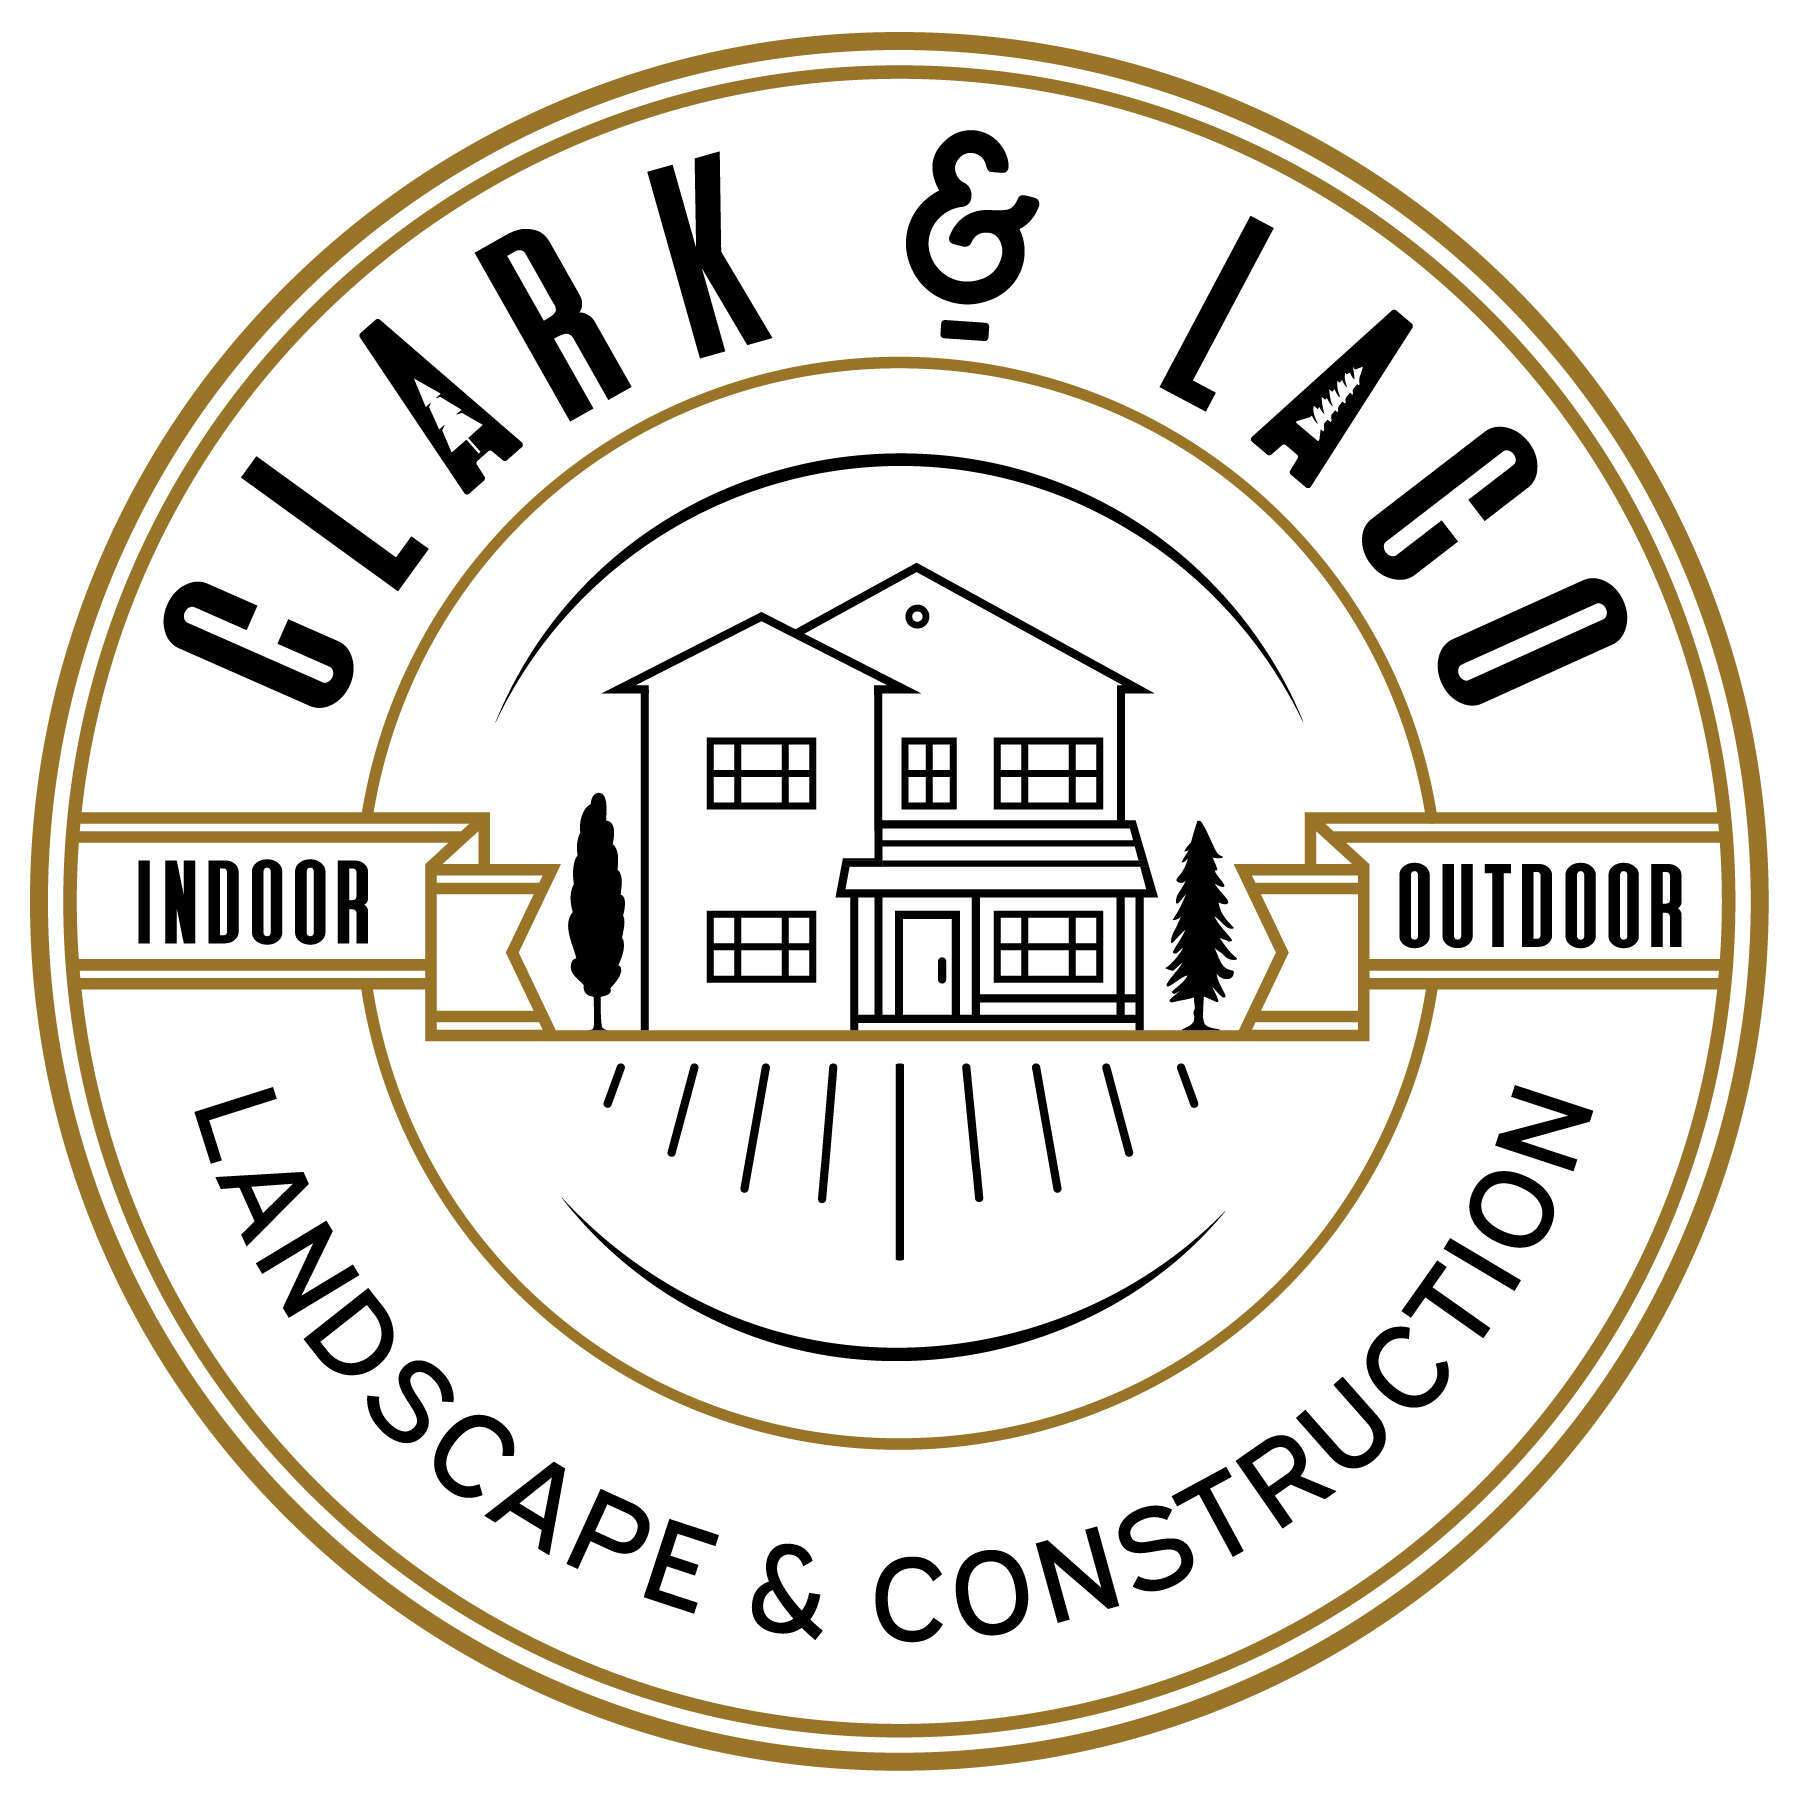 Clark & Lace Landscape & Construction